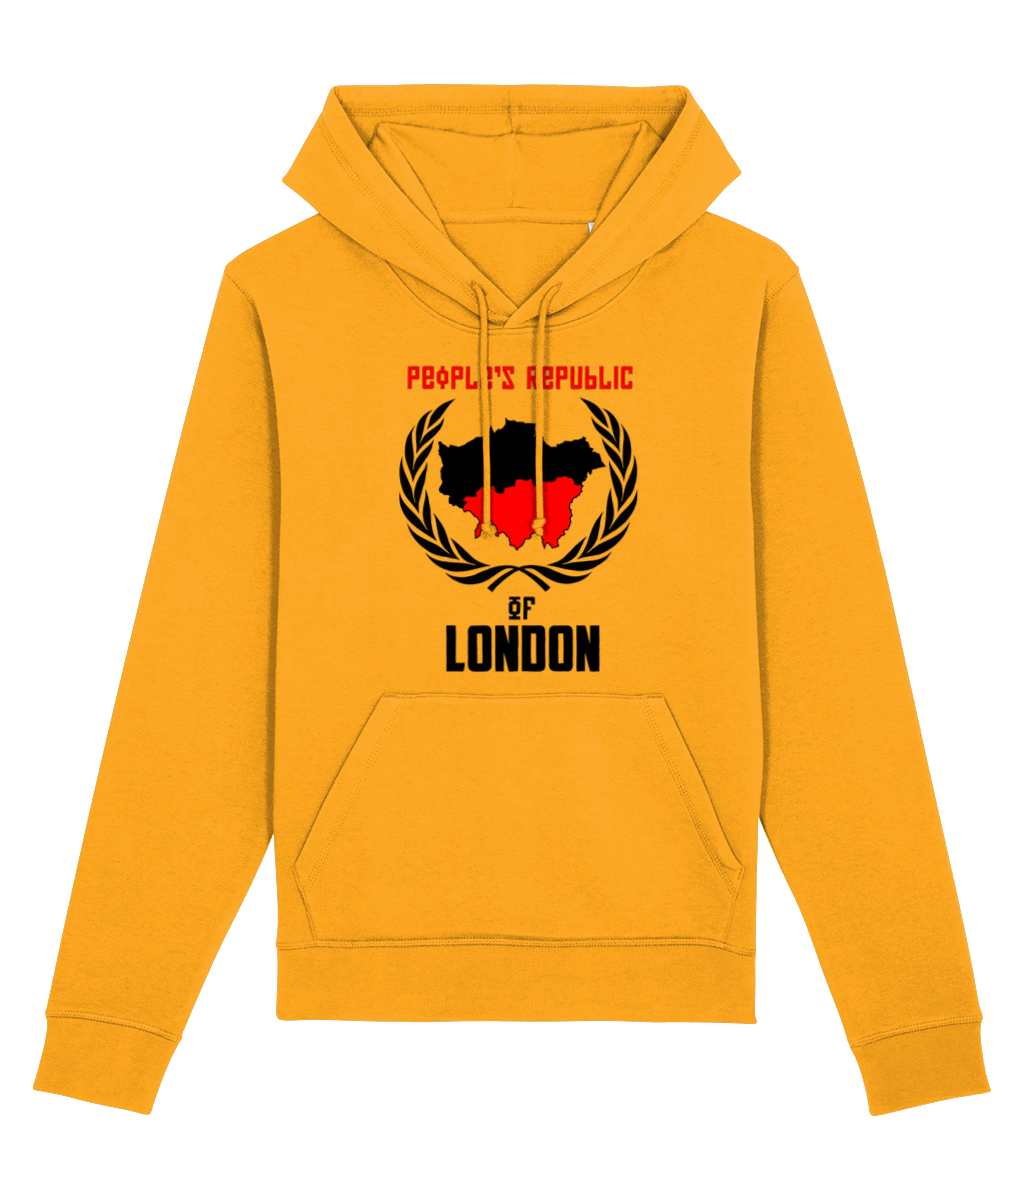 People's Republic of London Hoodie